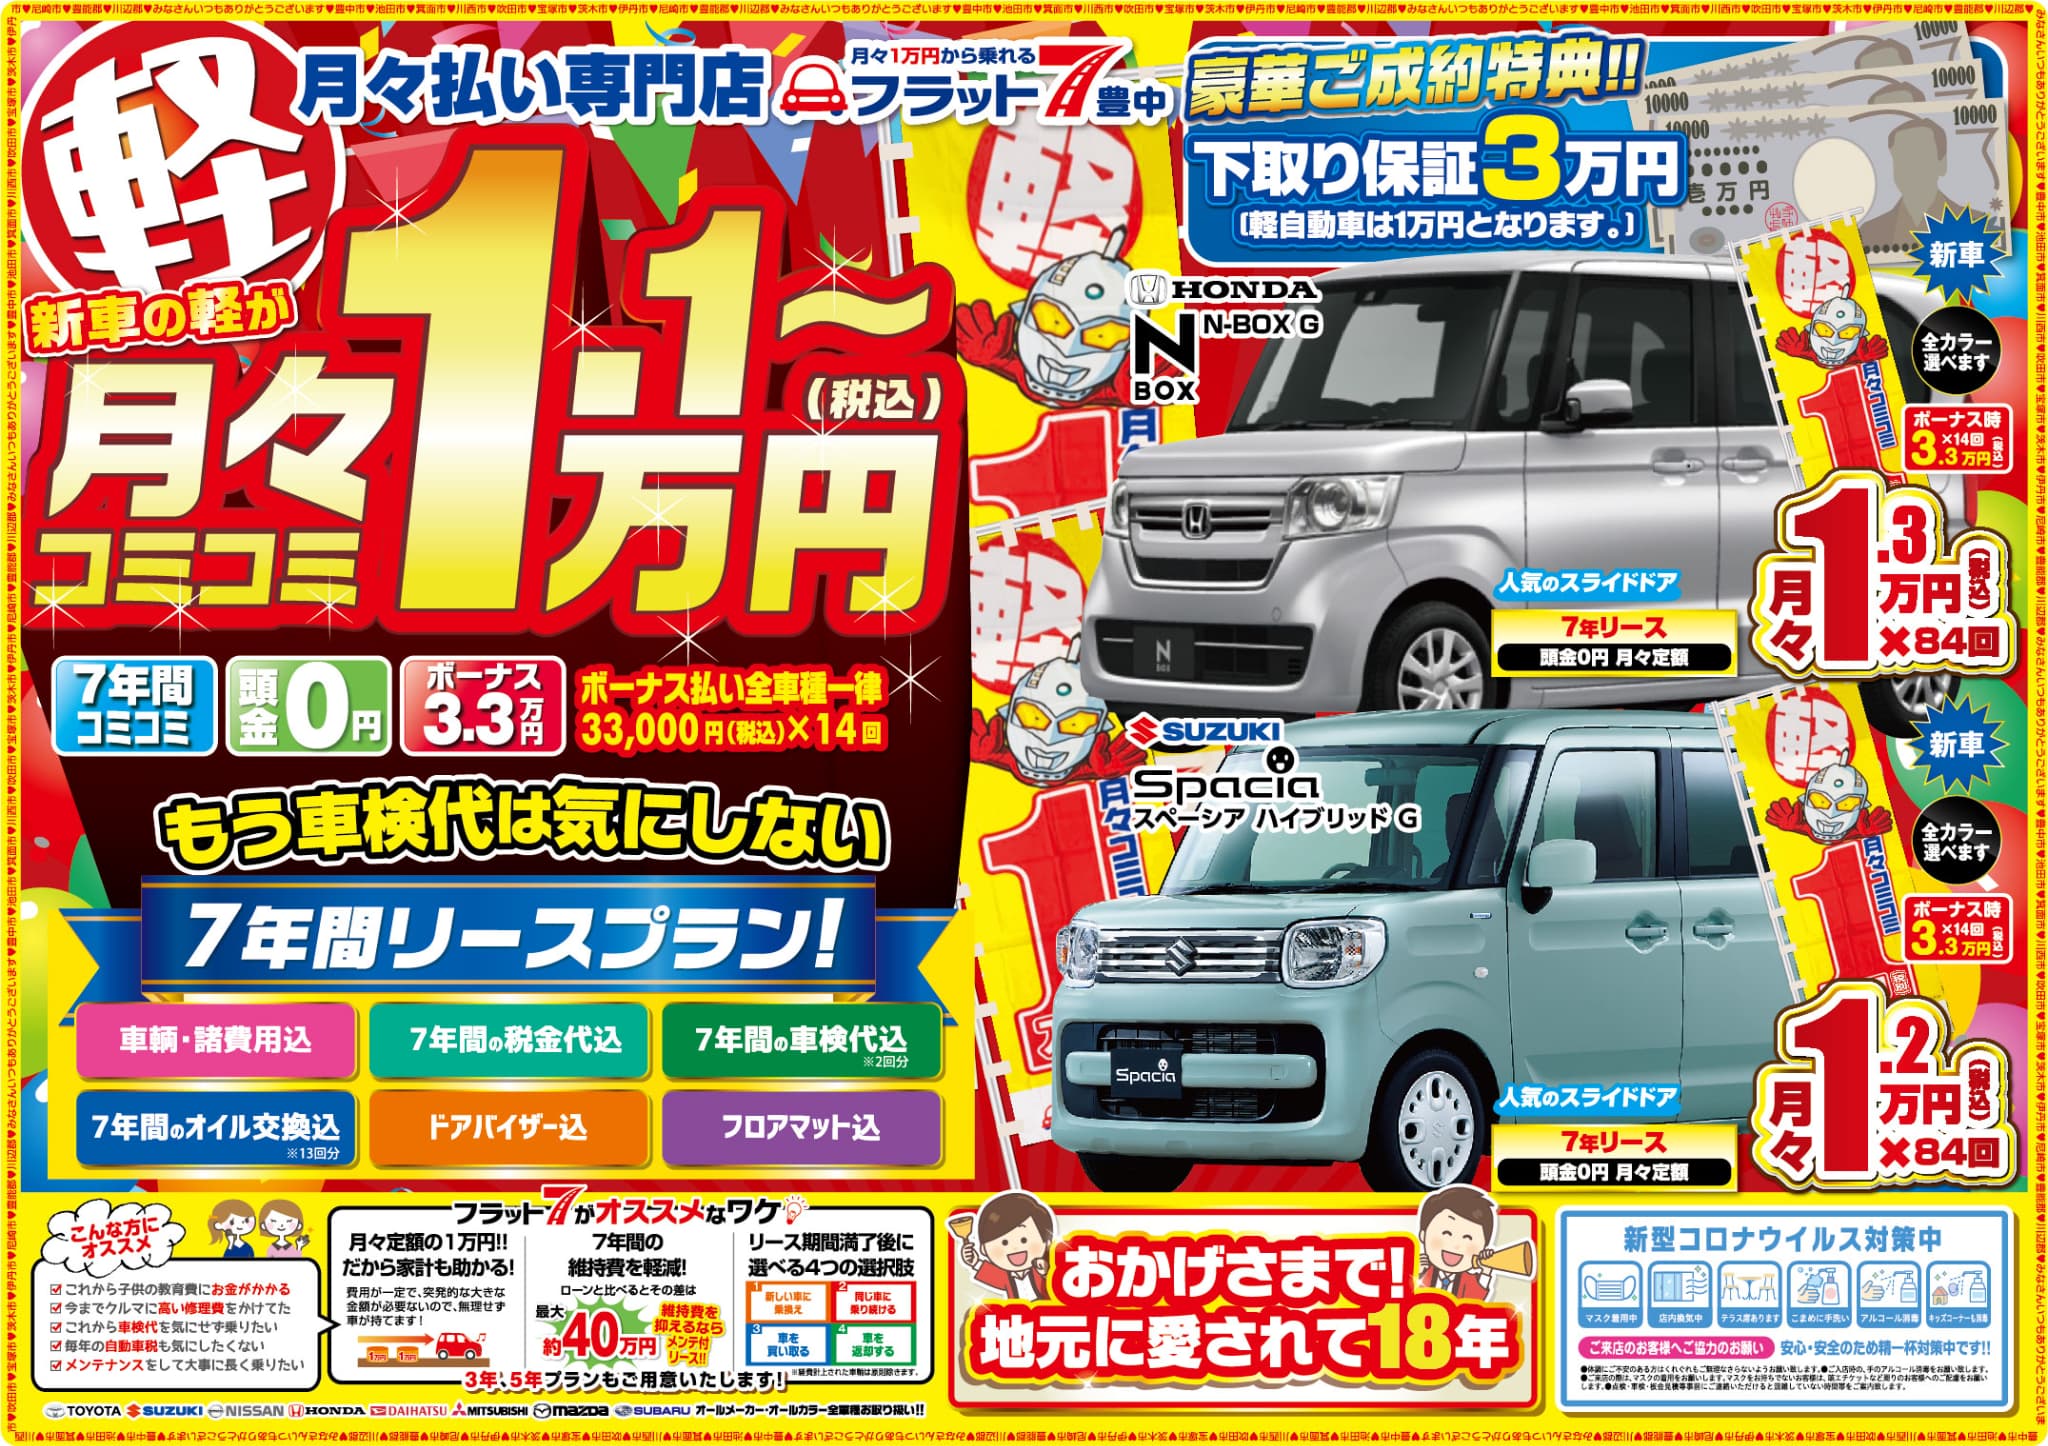 大阪 兵庫で新車 中古車をお探しならミニバン 軽自動車専門店ロココ